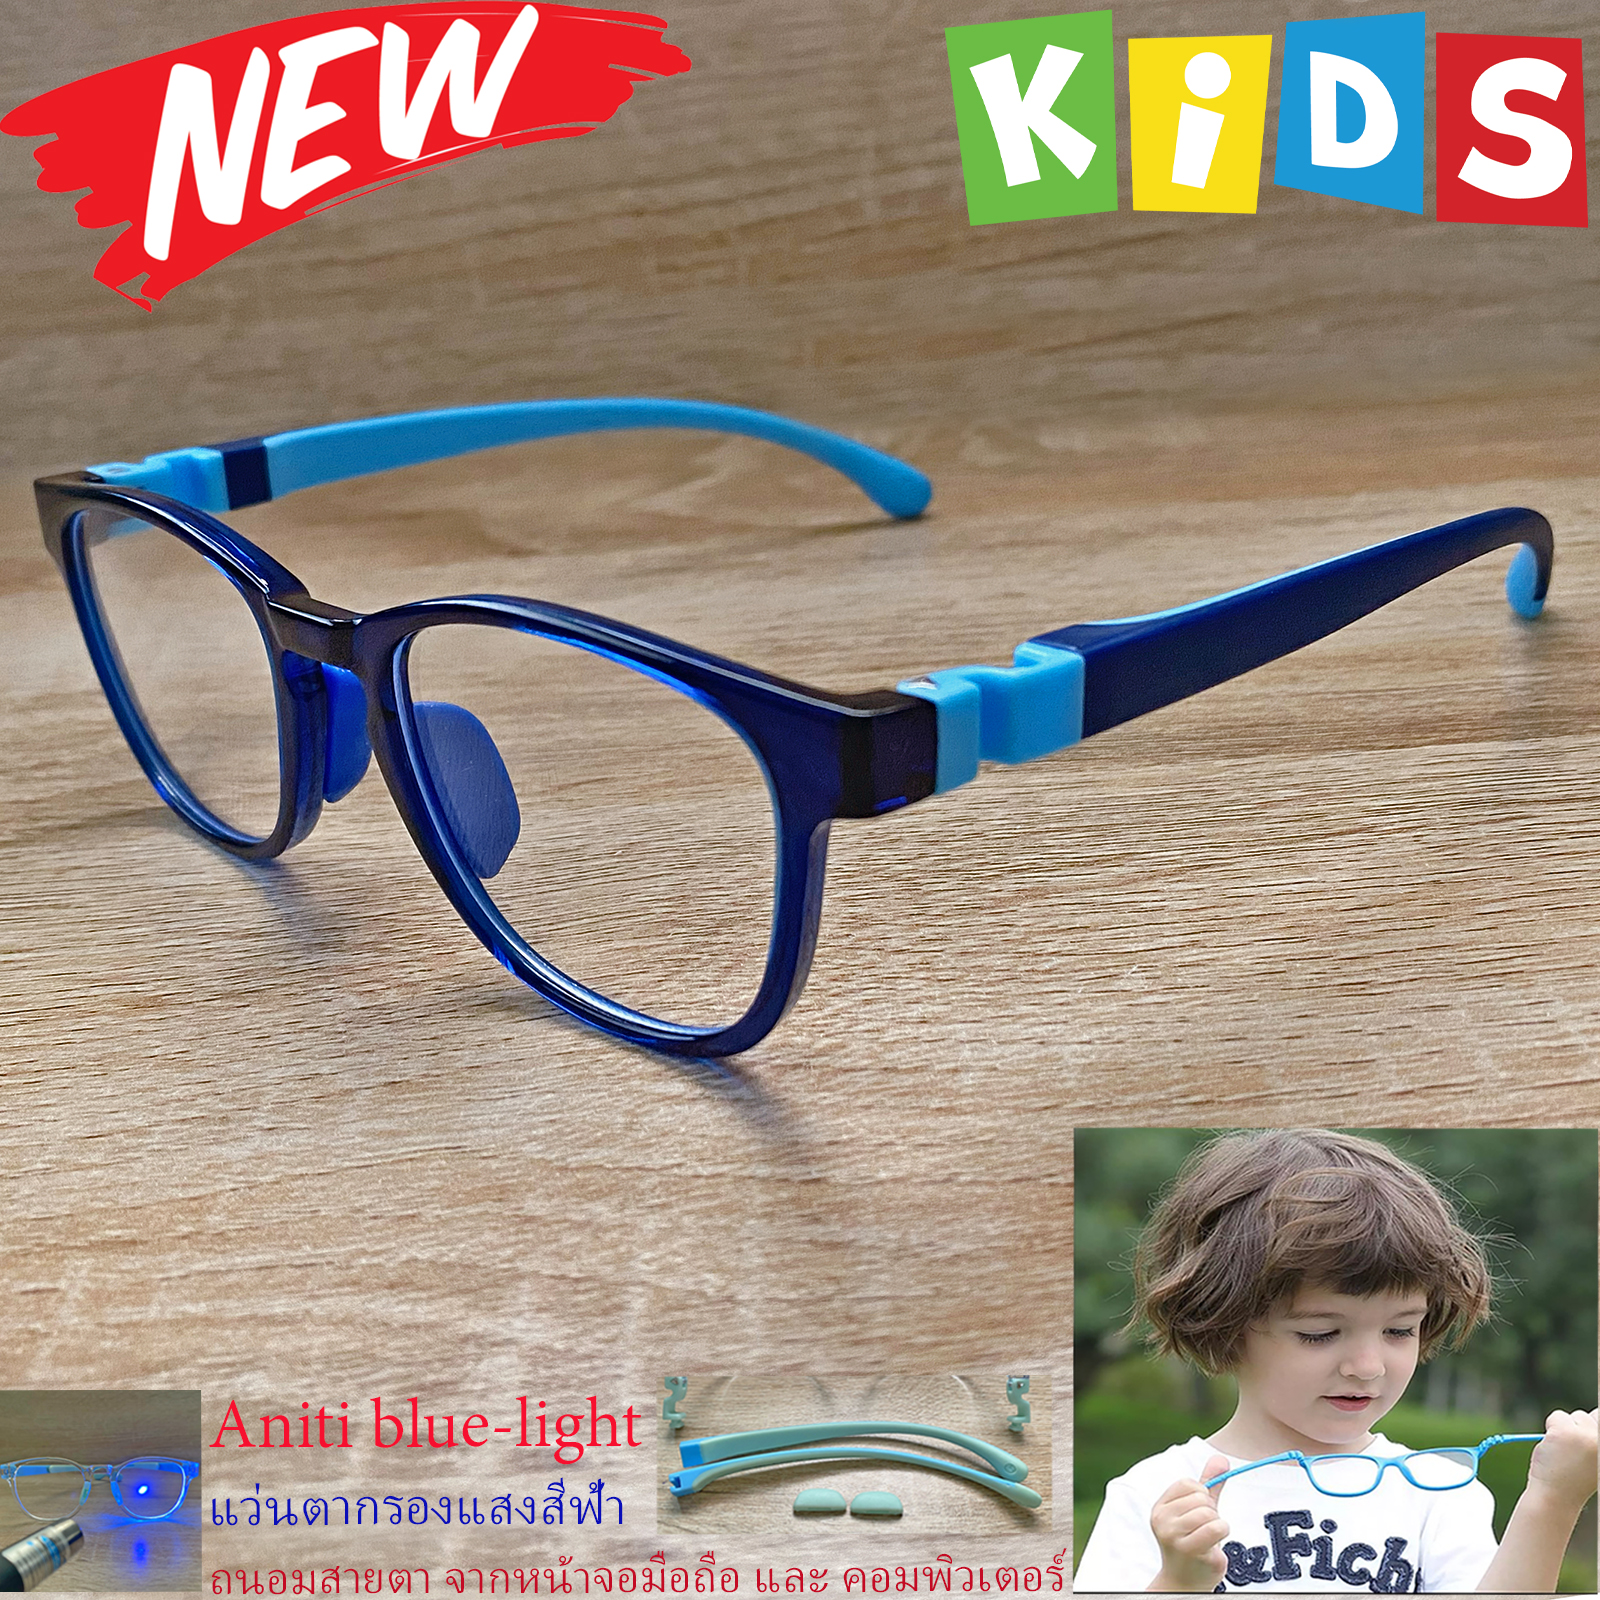 กรอบแว่นตาเด็ก กรองแสง สีฟ้า blue block แว่นเด็ก บลูบล็อค รุ่น 06 สีน้ำเงิน ขาข้อต่อยืดหยุ่น ถอดขาเปลี่ยนได้ วัสดุTR90 เหมาะสำหรับเลนส์สายตา